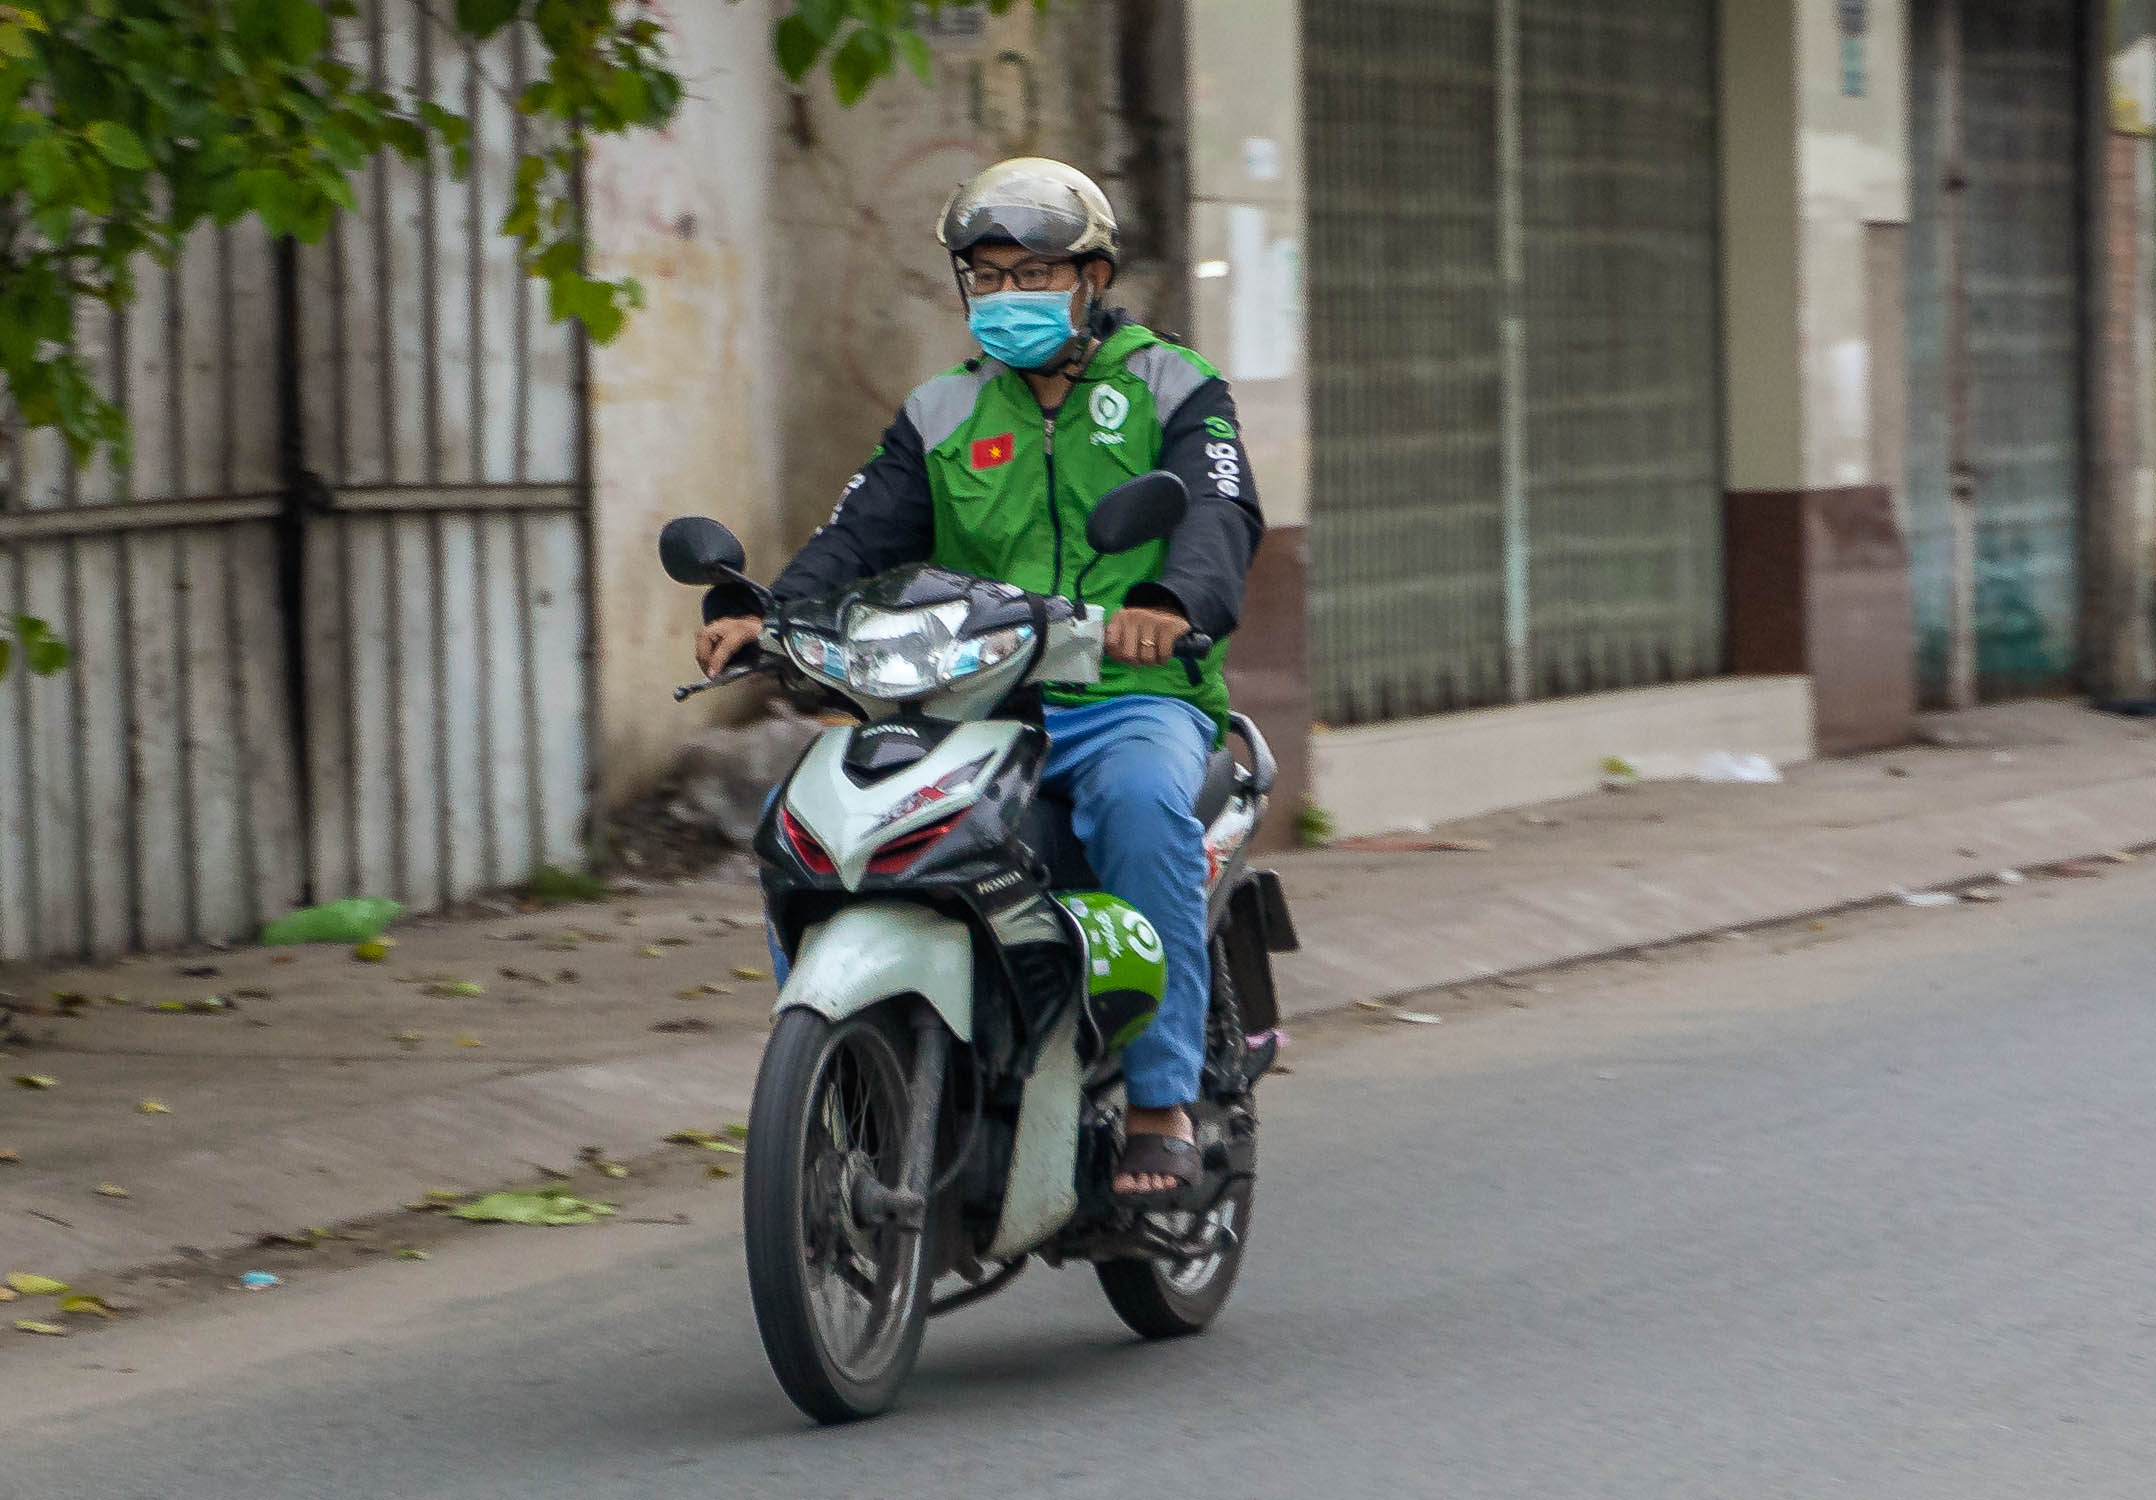 Gojek tặng các chuyến xe miễn phí cho người dùng Thành phố Hồ Chí Minh khi đi tiêm vaccine COVID-19, từ 19 đến 25/6